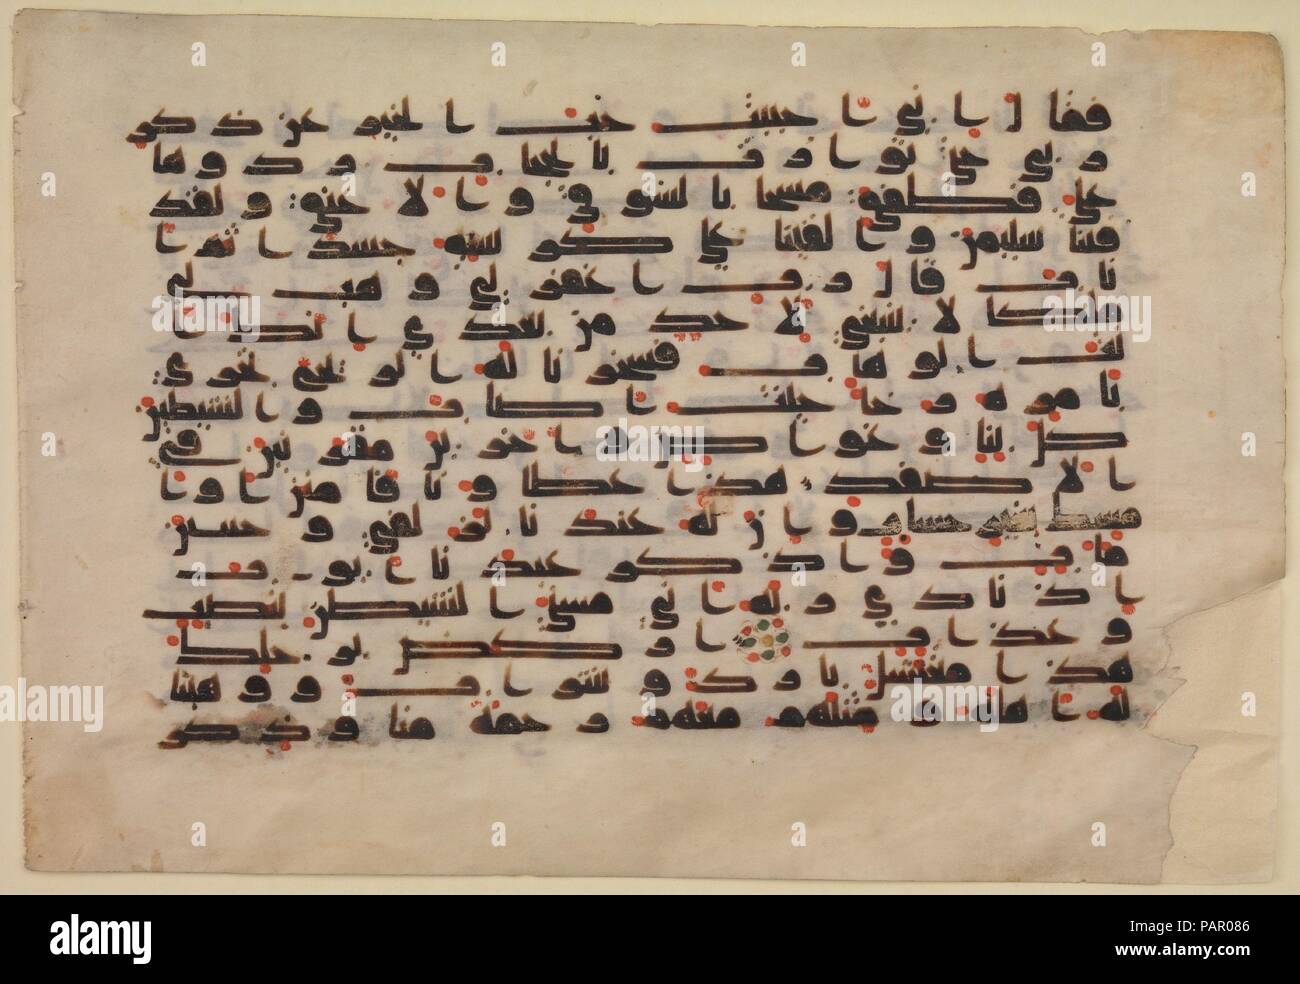 Folio aus der Koran Manuskript. Abmessungen: H. 8 1/2 in. (21,6 cm) W. 5 3/4 in. (14,6 cm). Datum: 8. bis 9. Jahrhundert. Während die frühesten erhaltenen Qur'ans in einem hohen, schlanken Skript bekannt als hijazi auf einem vertikalen Pergament Unterstützung kopiert wurden, solche Präferenzen wurden während der Omaijaden-periode als Schreiber verlassen die horizontale Format und kufischer Schrift der Art in diesem Folio gesehen entwickelt. Die großen, länglichen Kalligraphie breitet sich elegant über die horizontal Pergament formatiert, wie die schriftgelehrten die Breite der einzelnen Buchstaben, Zeilen zu füllen. Die frühesten Skript fehlte Punkte ein Stockfoto